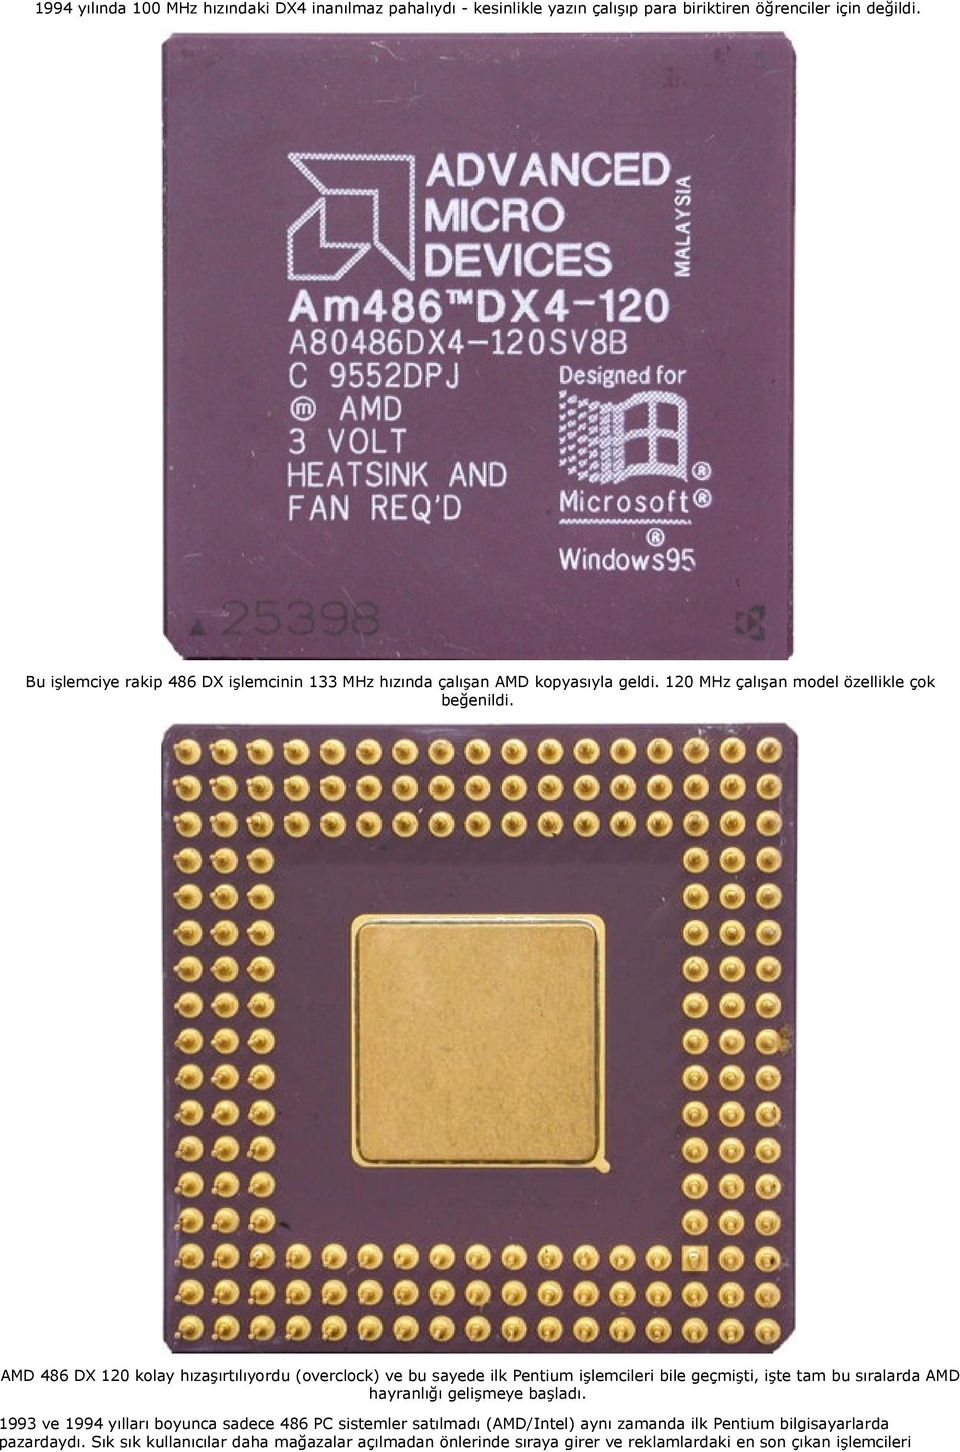 AMD 486 DX 120 kolay hızaşırtılıyordu (overclock) ve bu sayede ilk Pentium işlemcileri bile geçmişti, işte tam bu sıralarda AMD hayranlığı gelişmeye başladı.